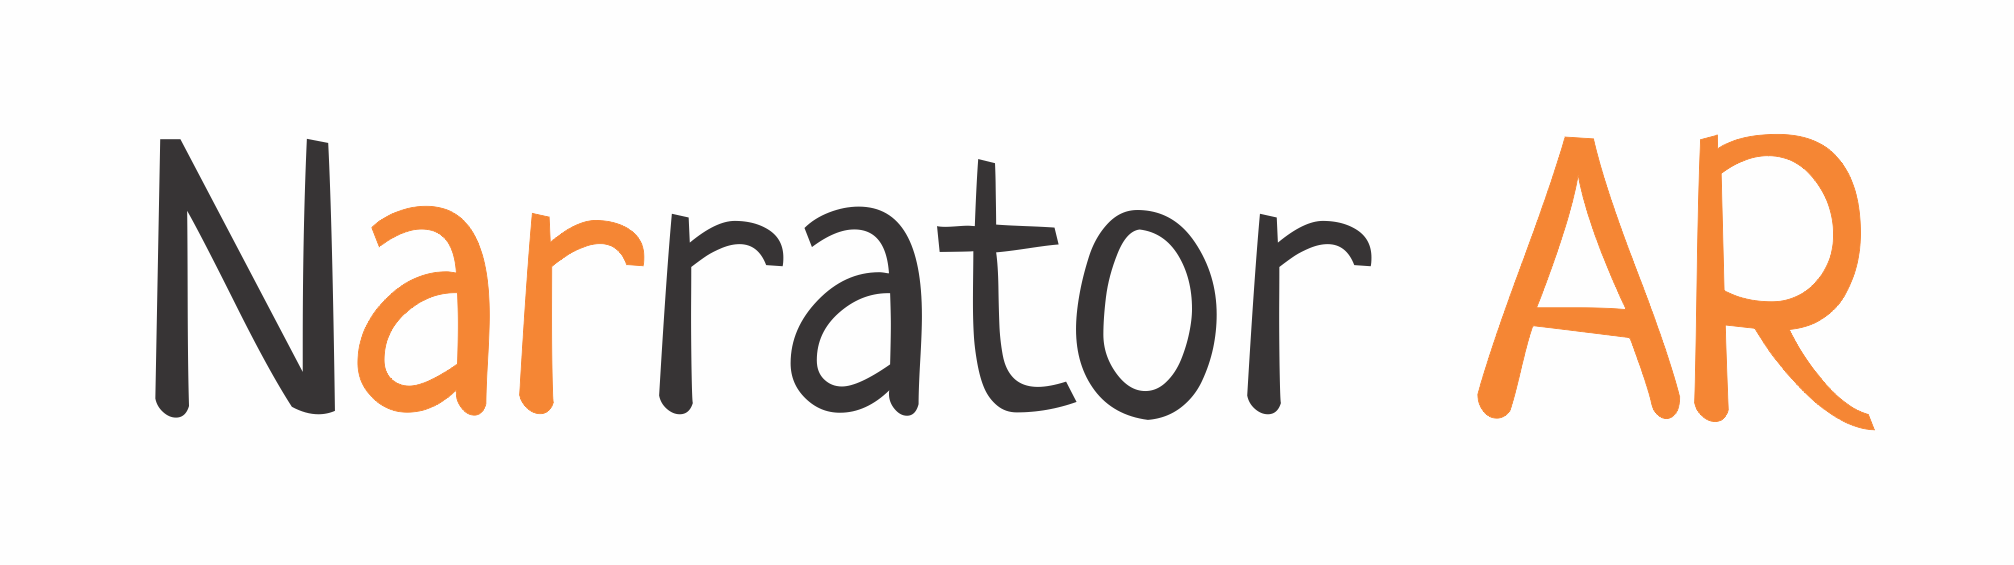 NarratorAR Logo